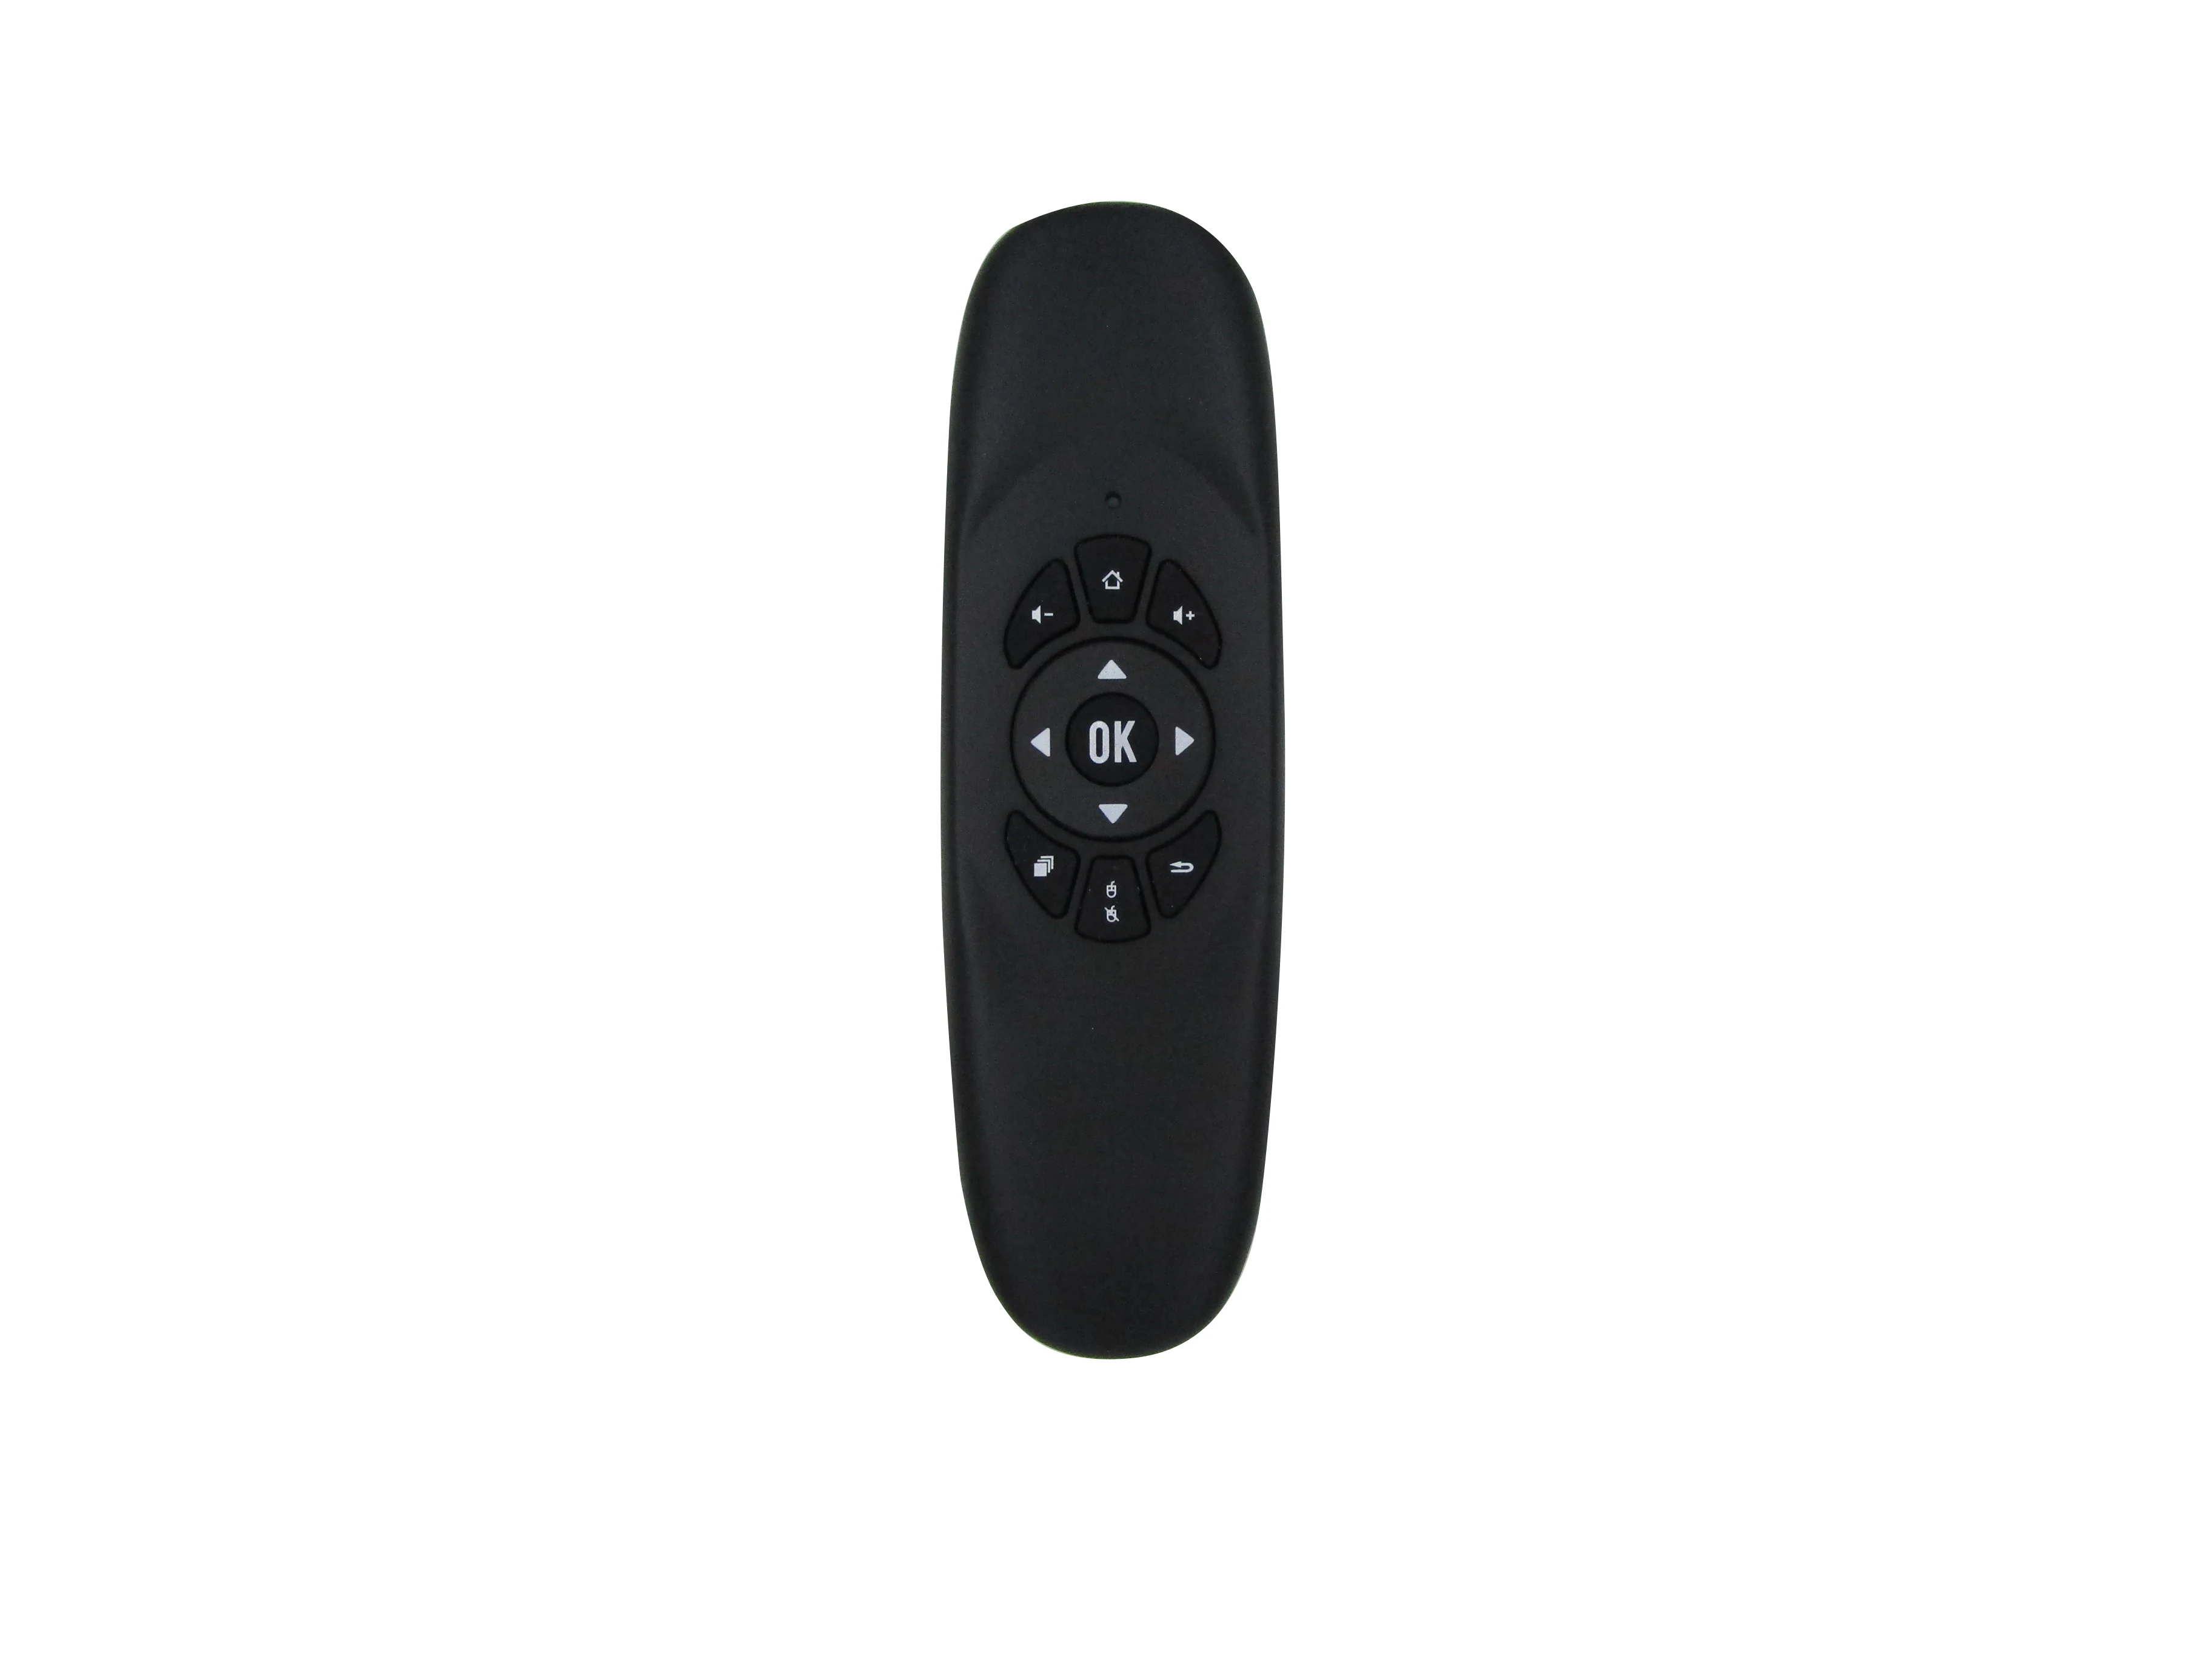 Air mouse пульт дистанционного управления для JVC LT-32KB45 LT-32KB35& Tokkma& Shark Smart Светодиодный HD ТВ с QWERTY клавиатурой